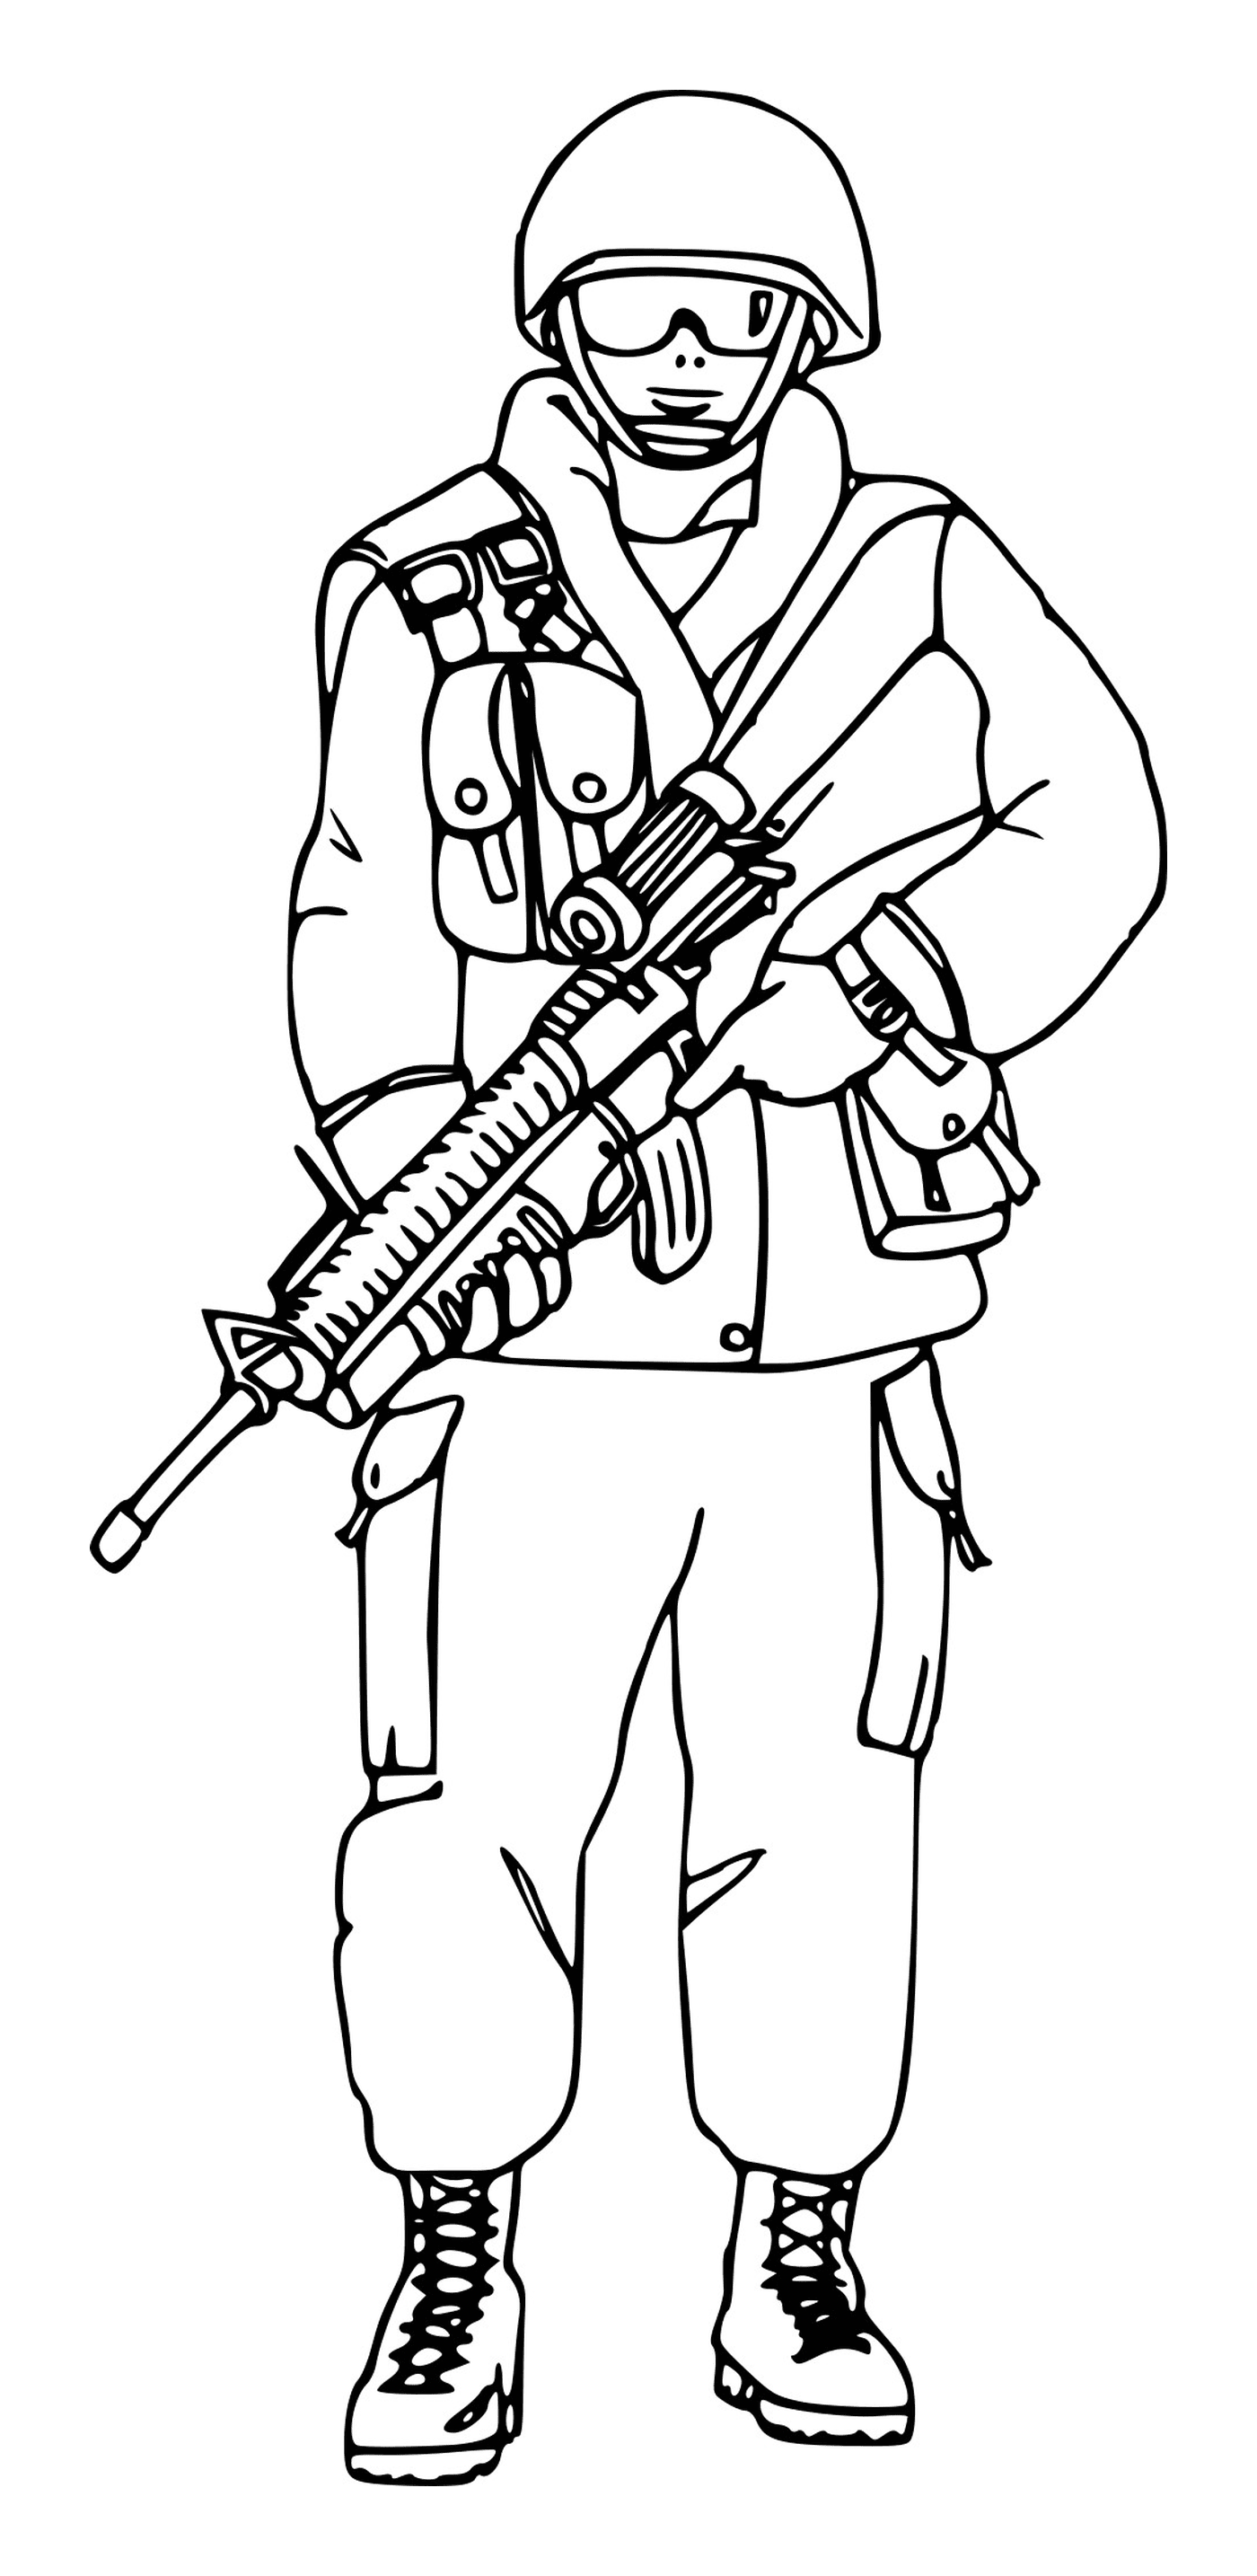  Soldat mit Brille: ein Soldat, der ein Gewehr hält 